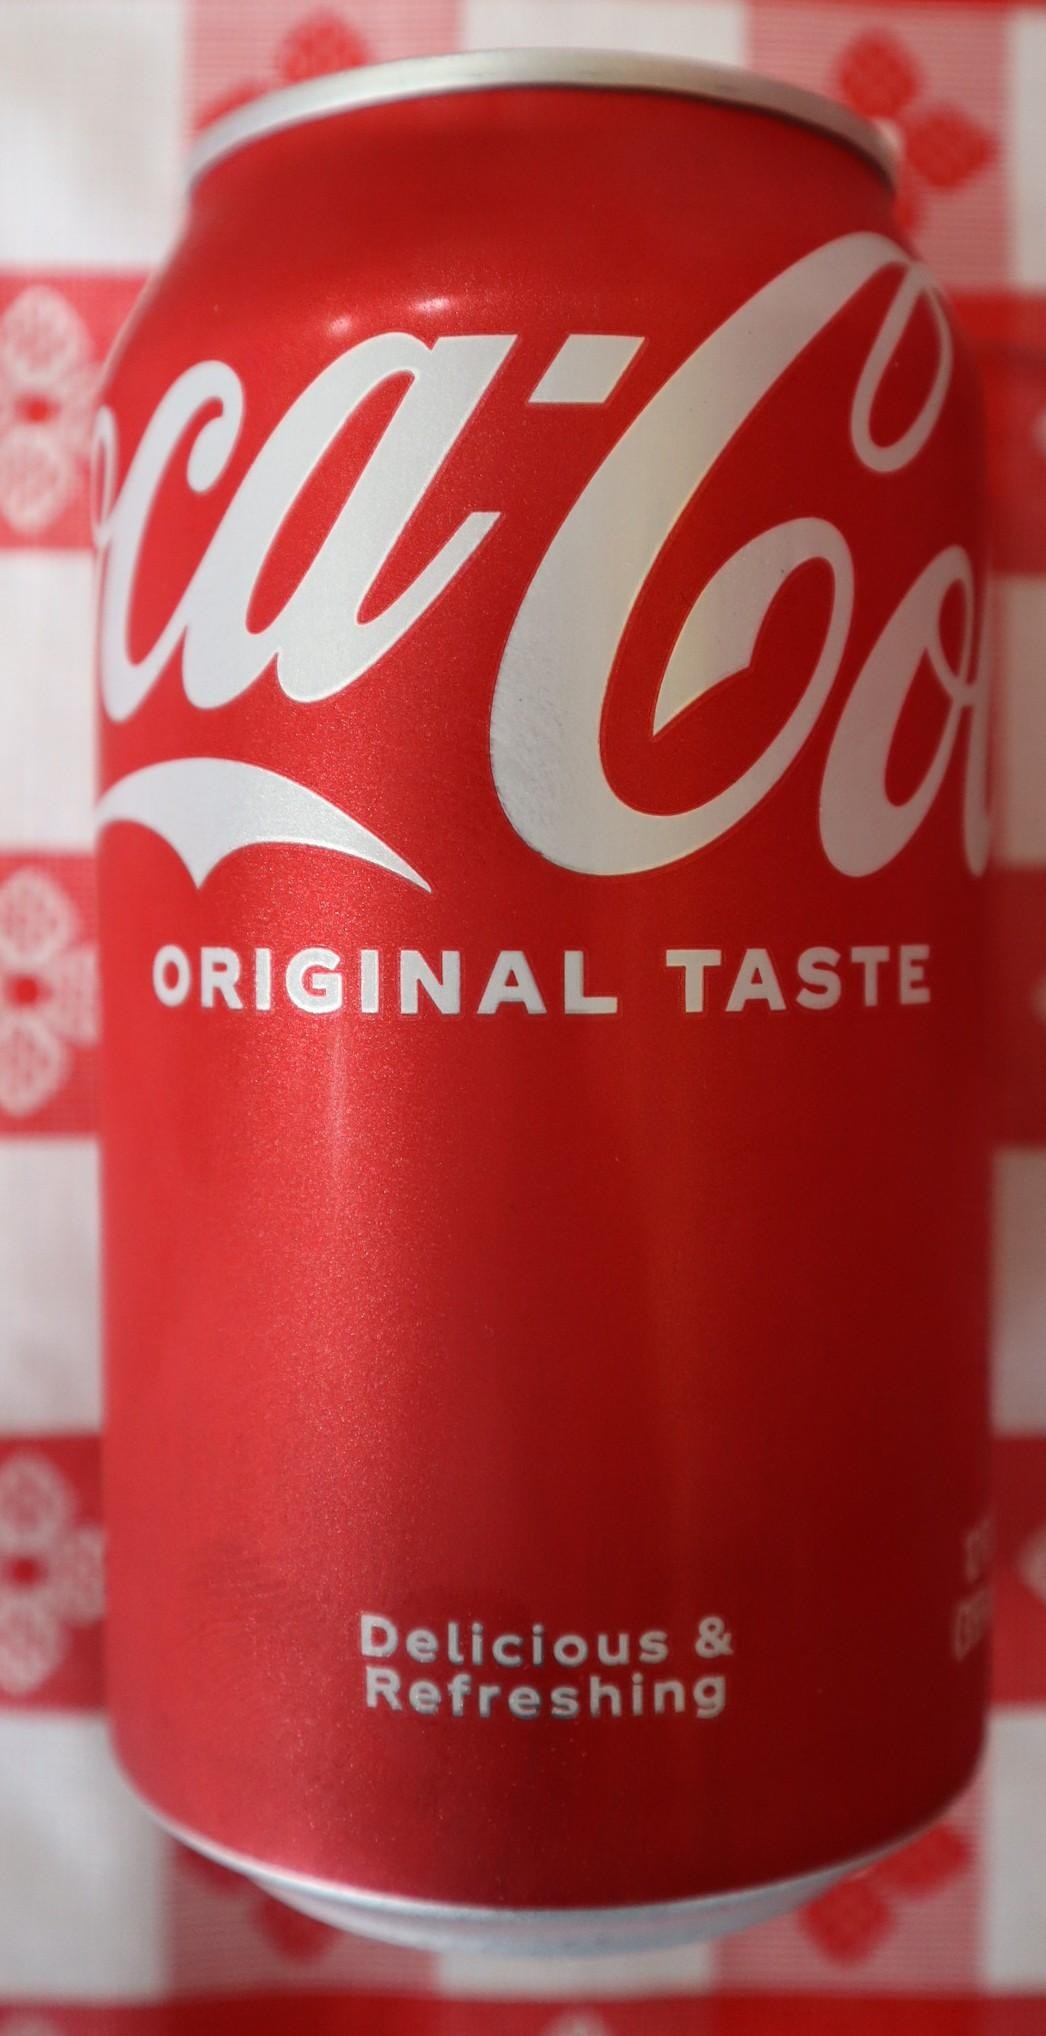 Can Coca-Cola